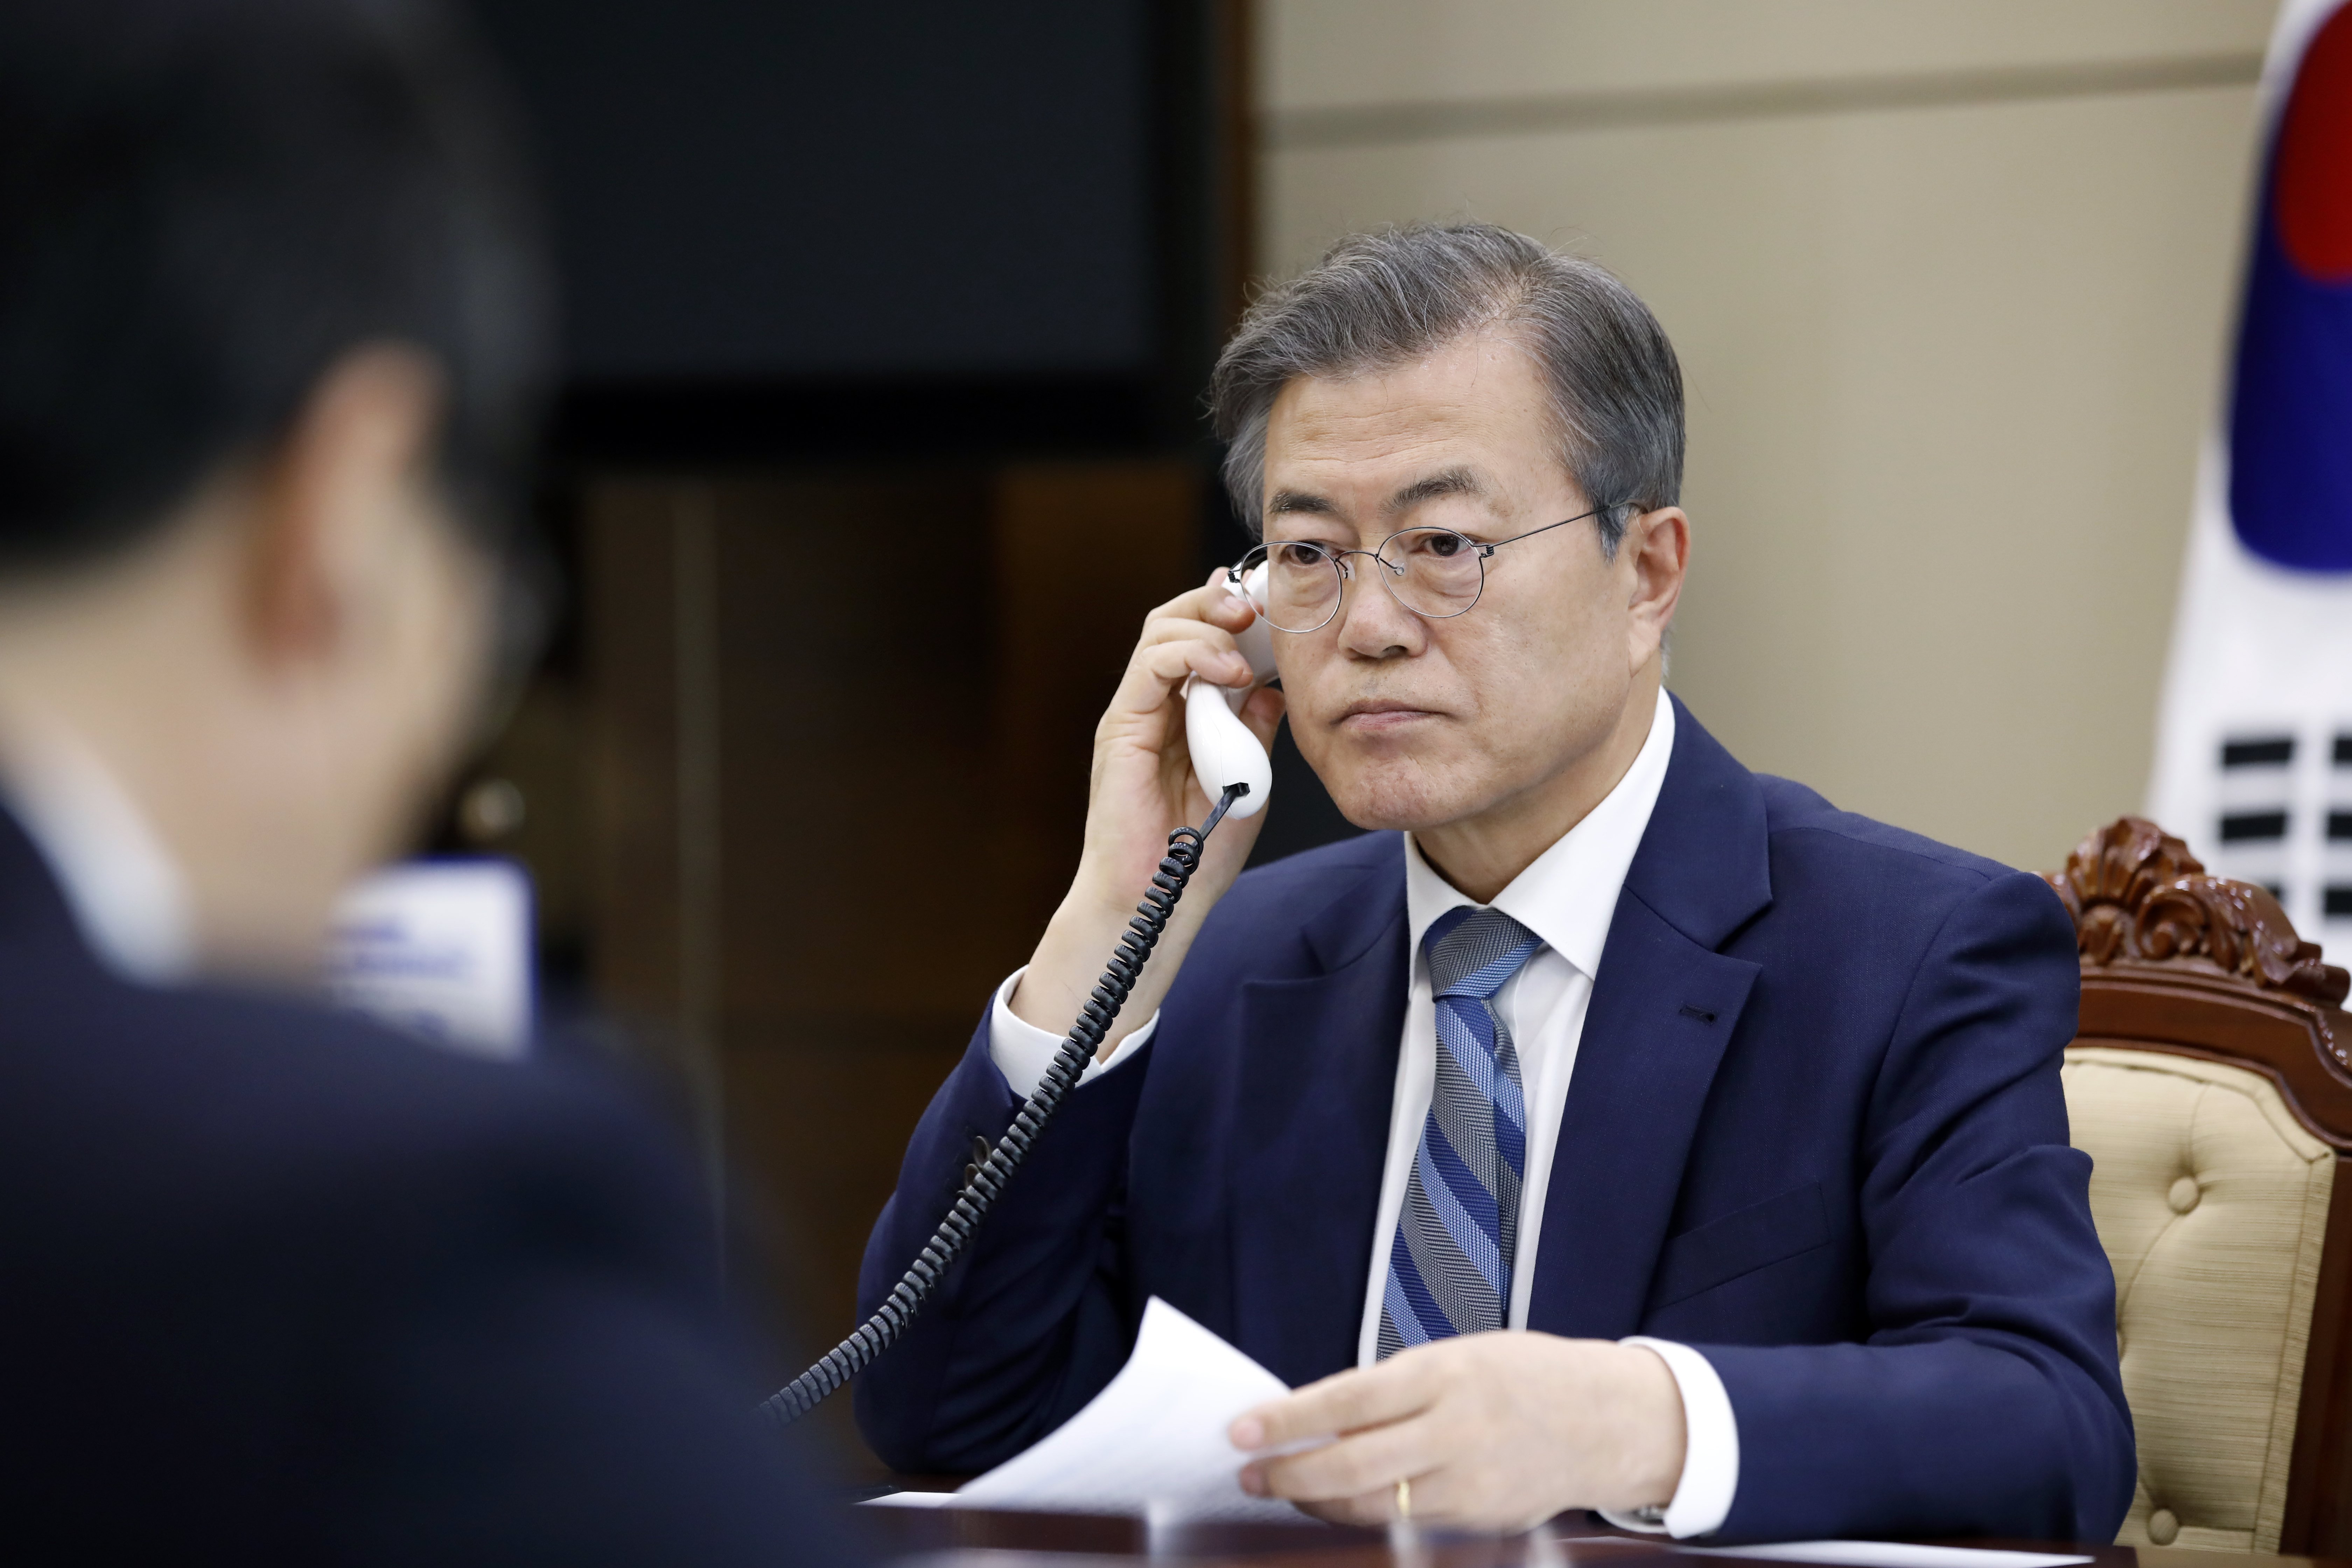 Cimeira entre Japão, Coreia do Sul e China marcada para 09 de maio